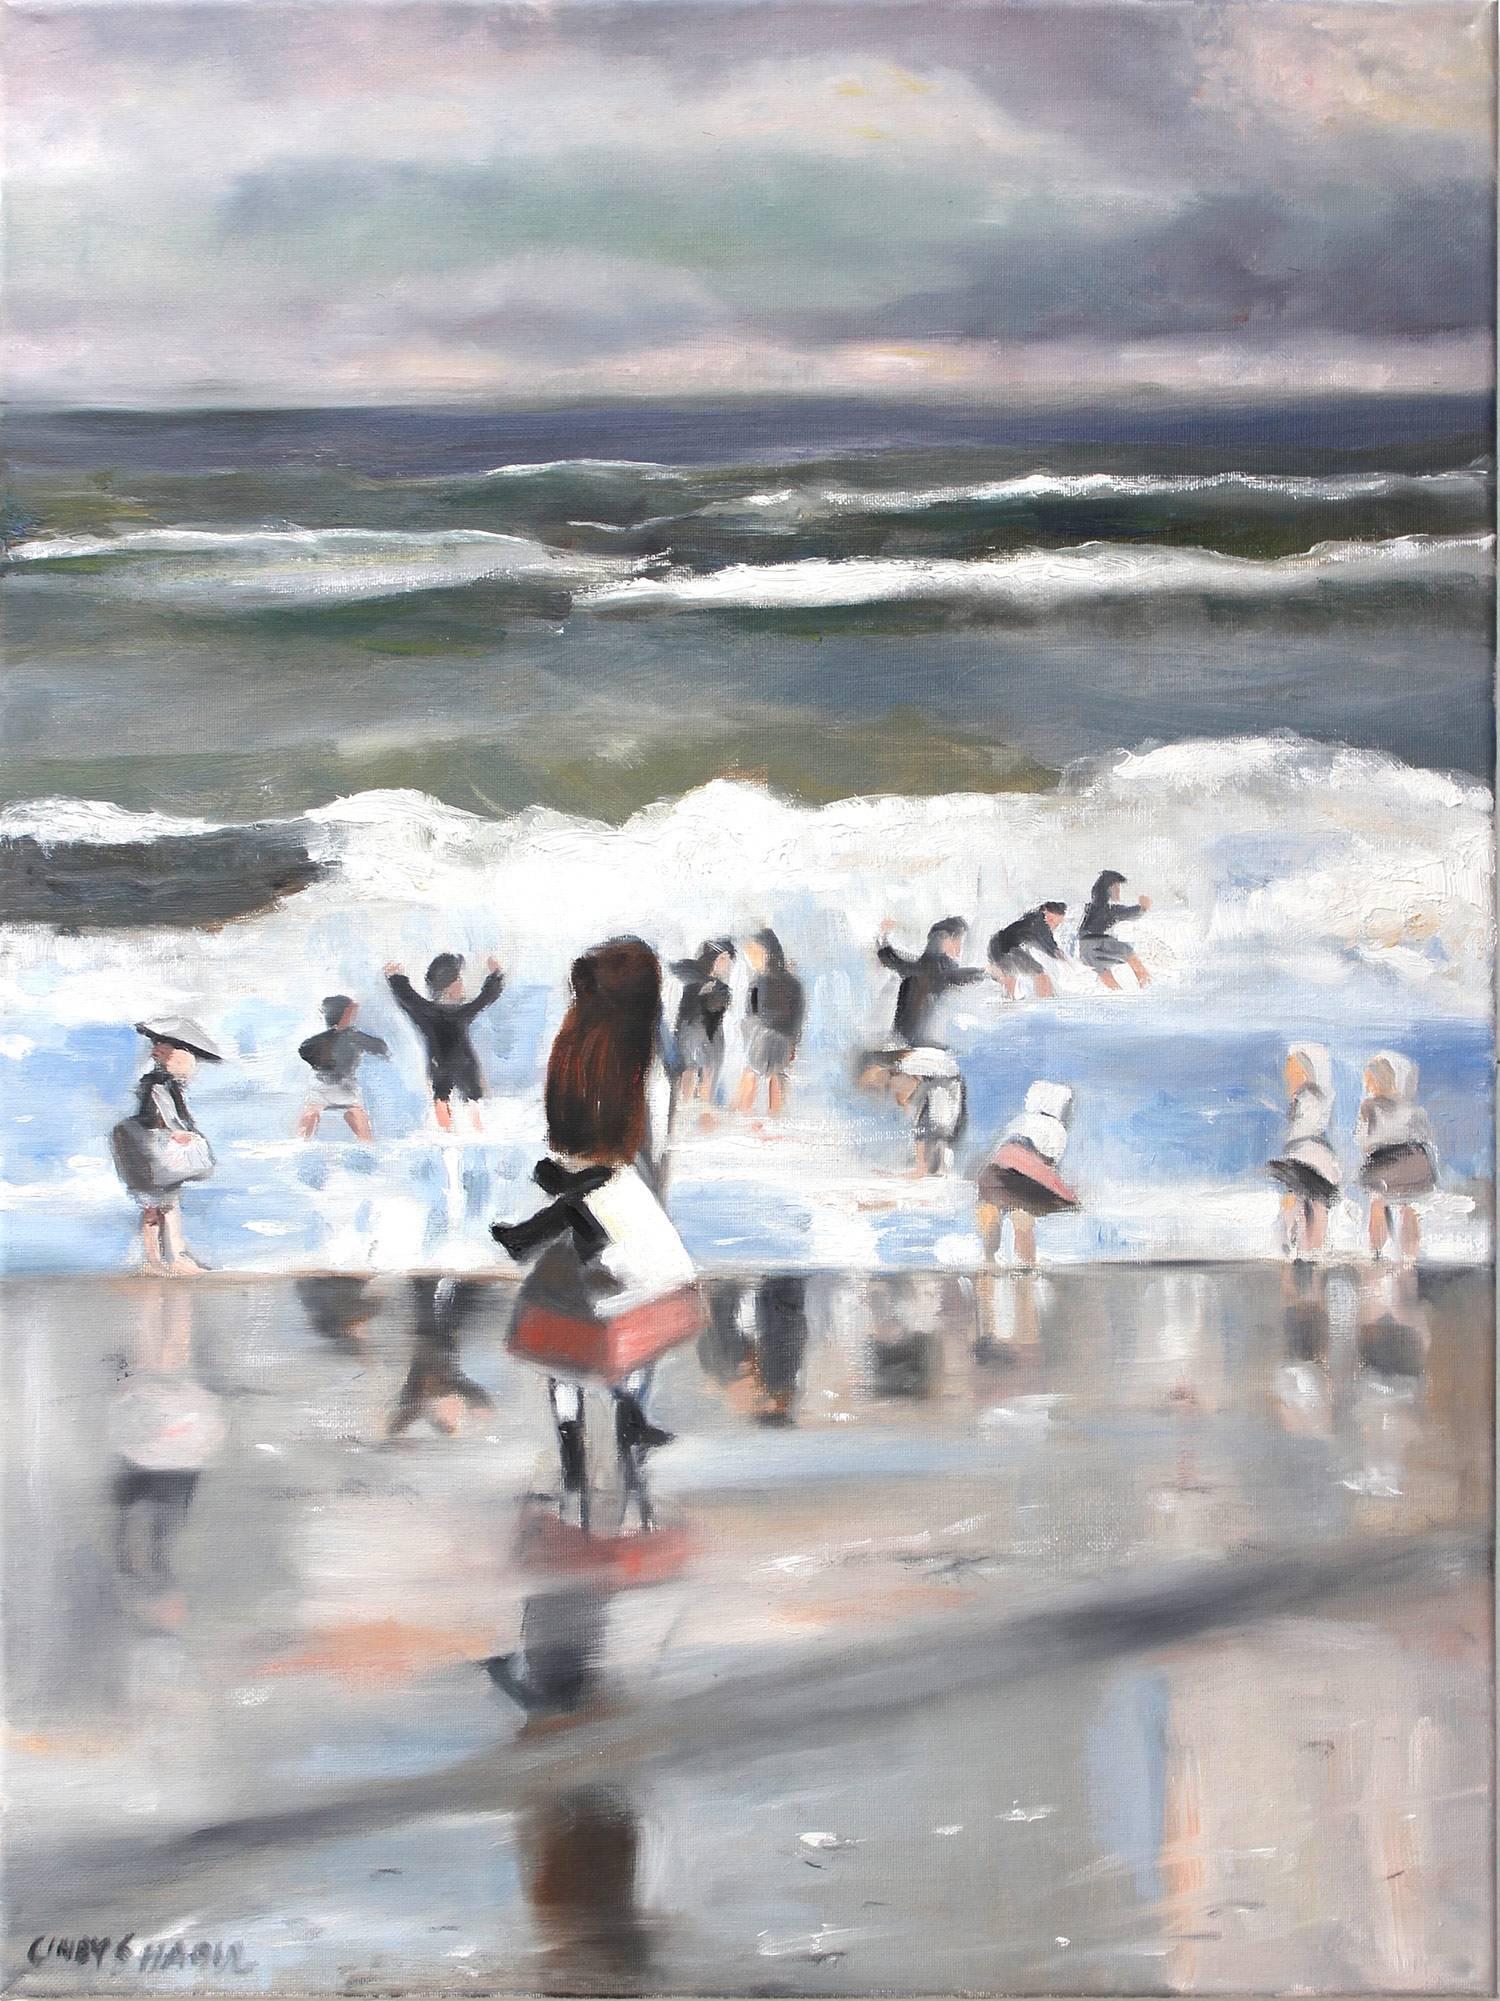 Landscape Painting Cindy Shaoul - « Une journée d'été à la plage » - Peinture à l'huile impressionniste d'une scène de plage sur toile